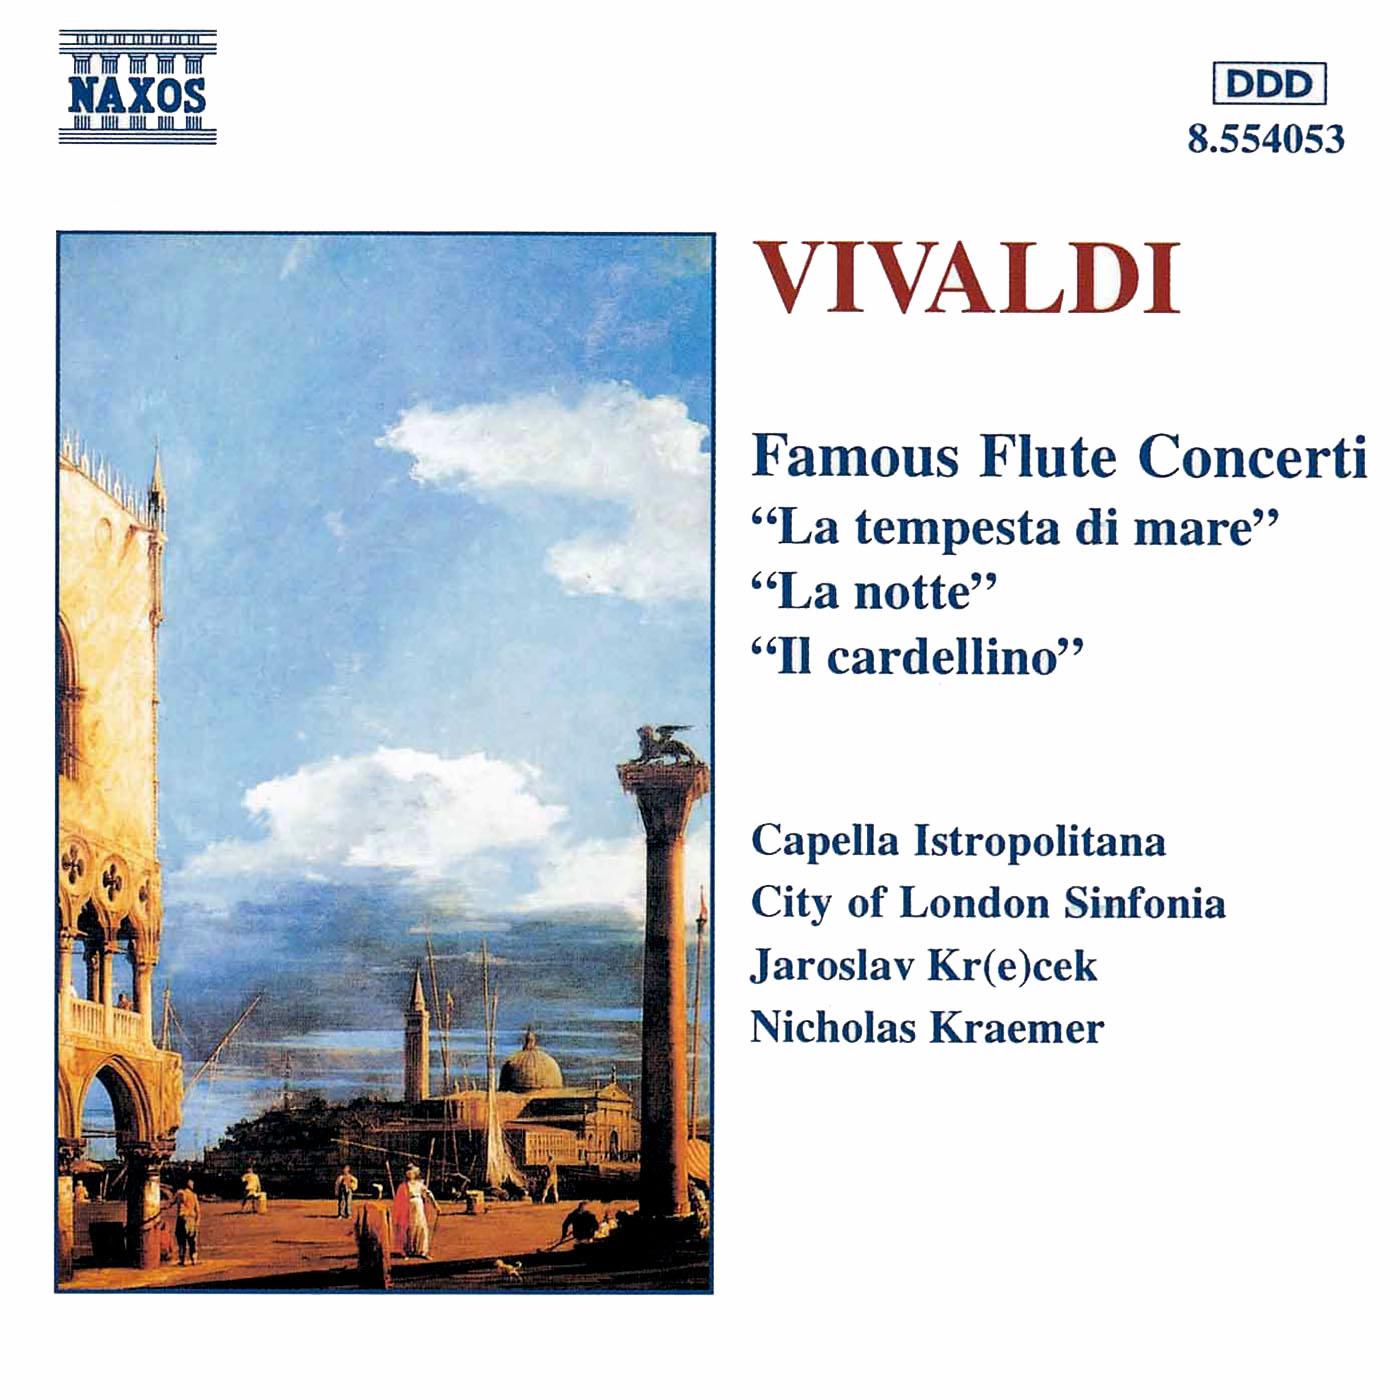 Flautino Concerto in C Major, RV 443*: III. Allegro molto